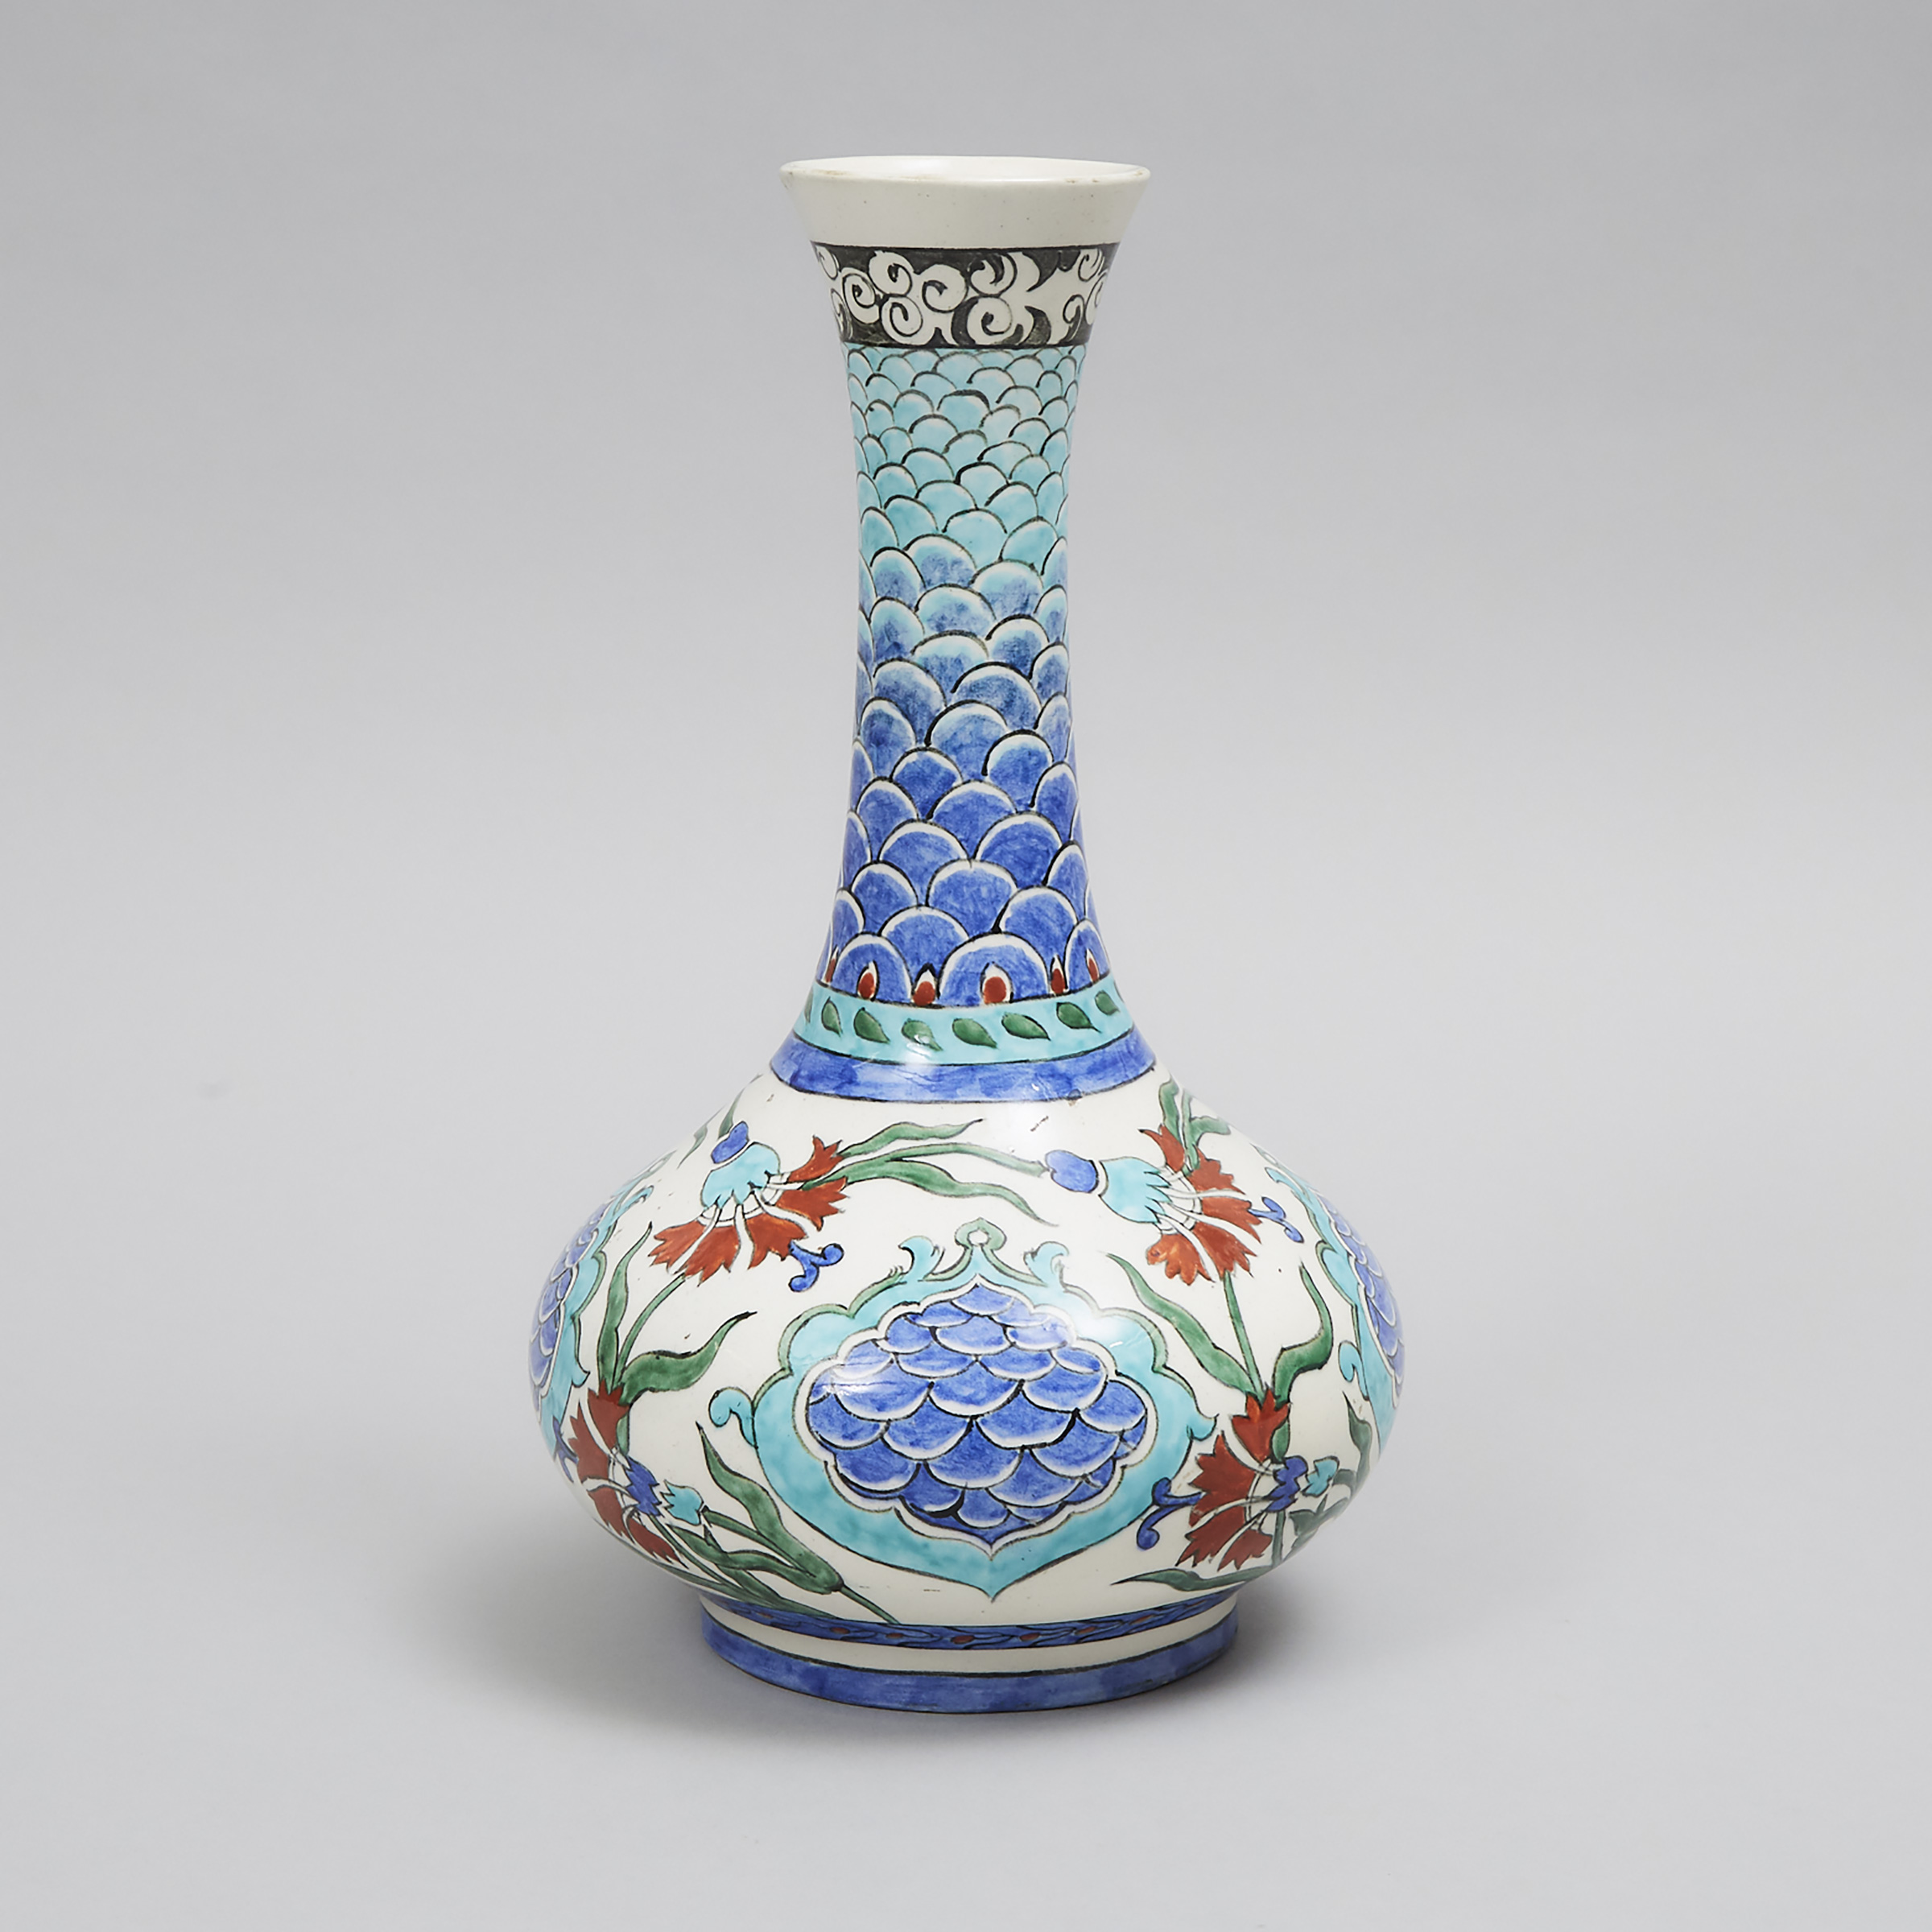 Iznik Style Bottle Vase by Paul Milet Pottery, Sèvres, France, early 20th century